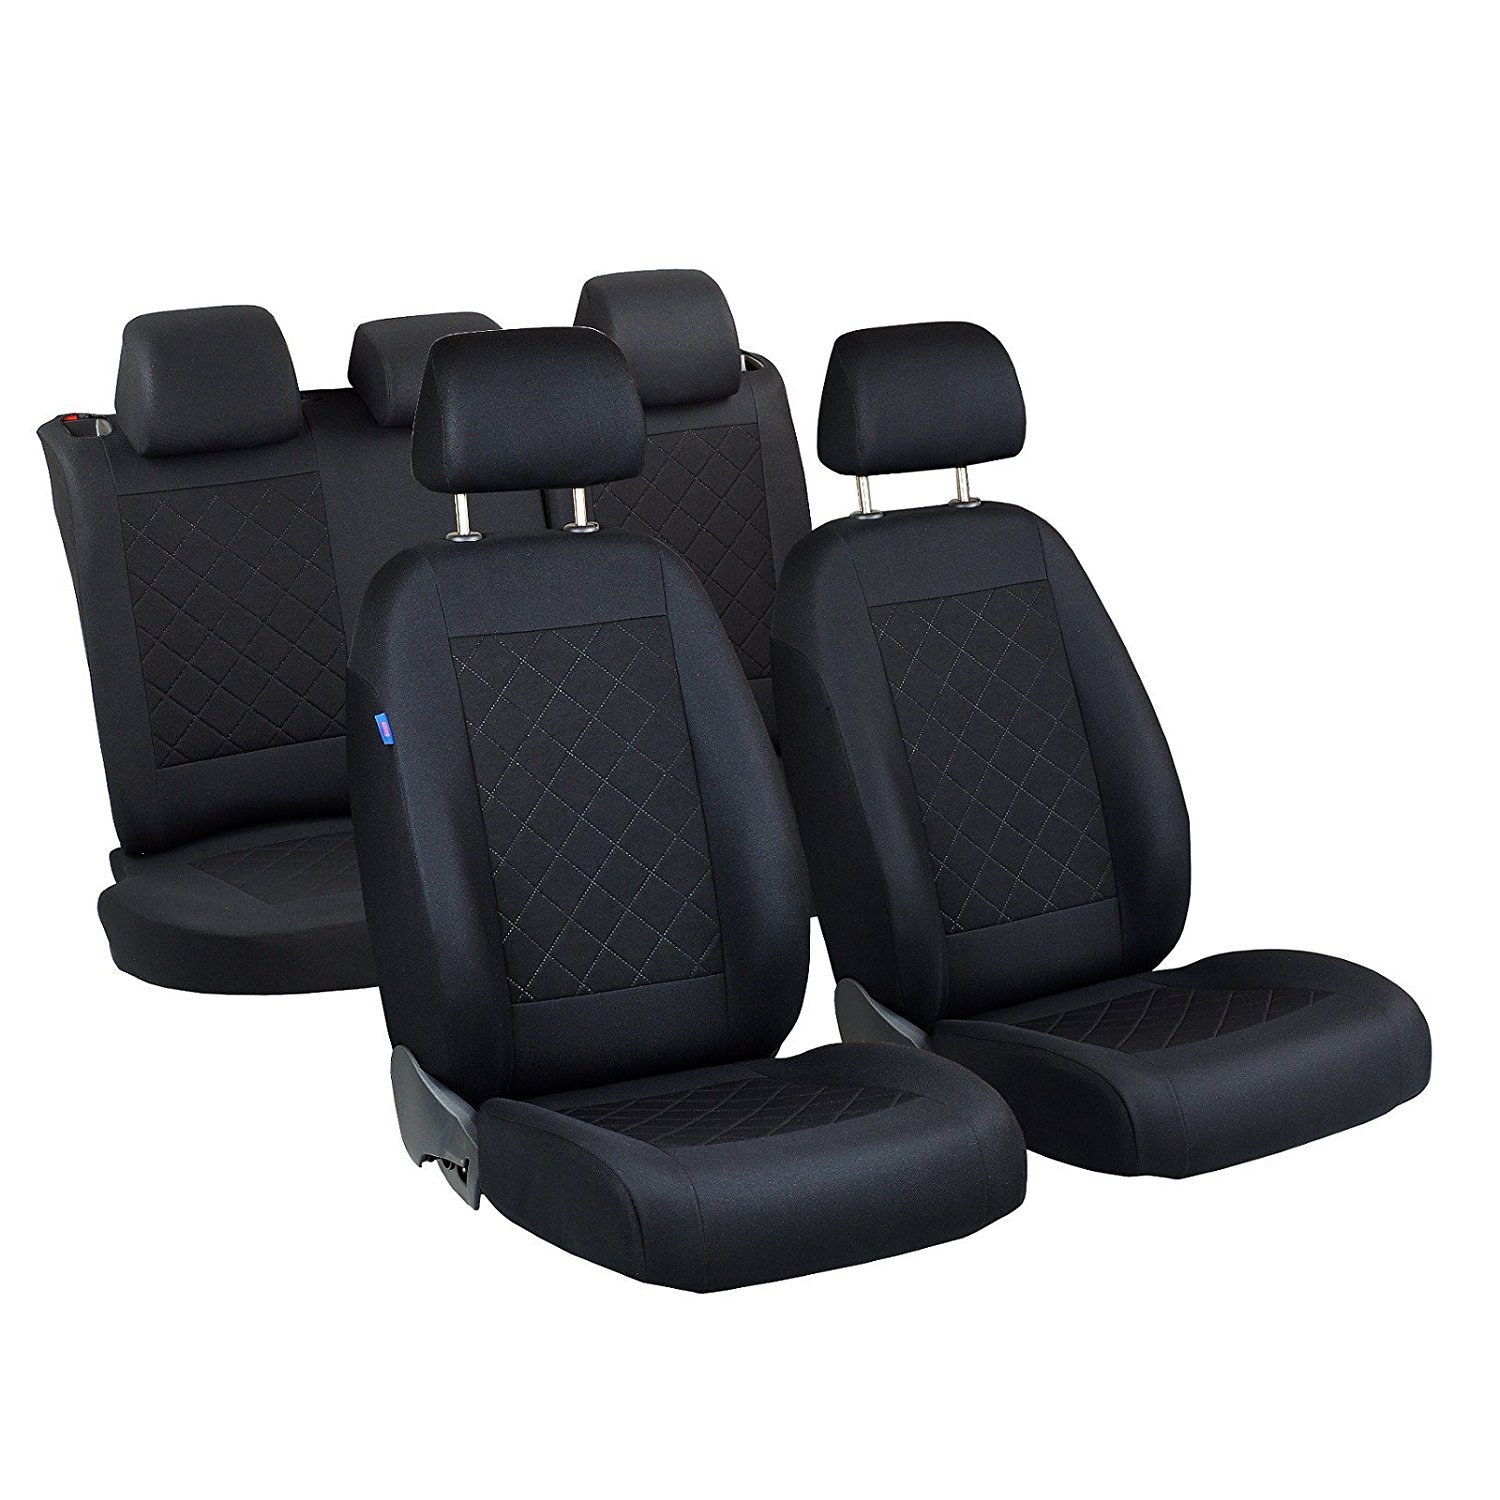 Yaris Sitzbezüge - 1 Set - Farbe Premium Schwarz gepresstes Karomuster